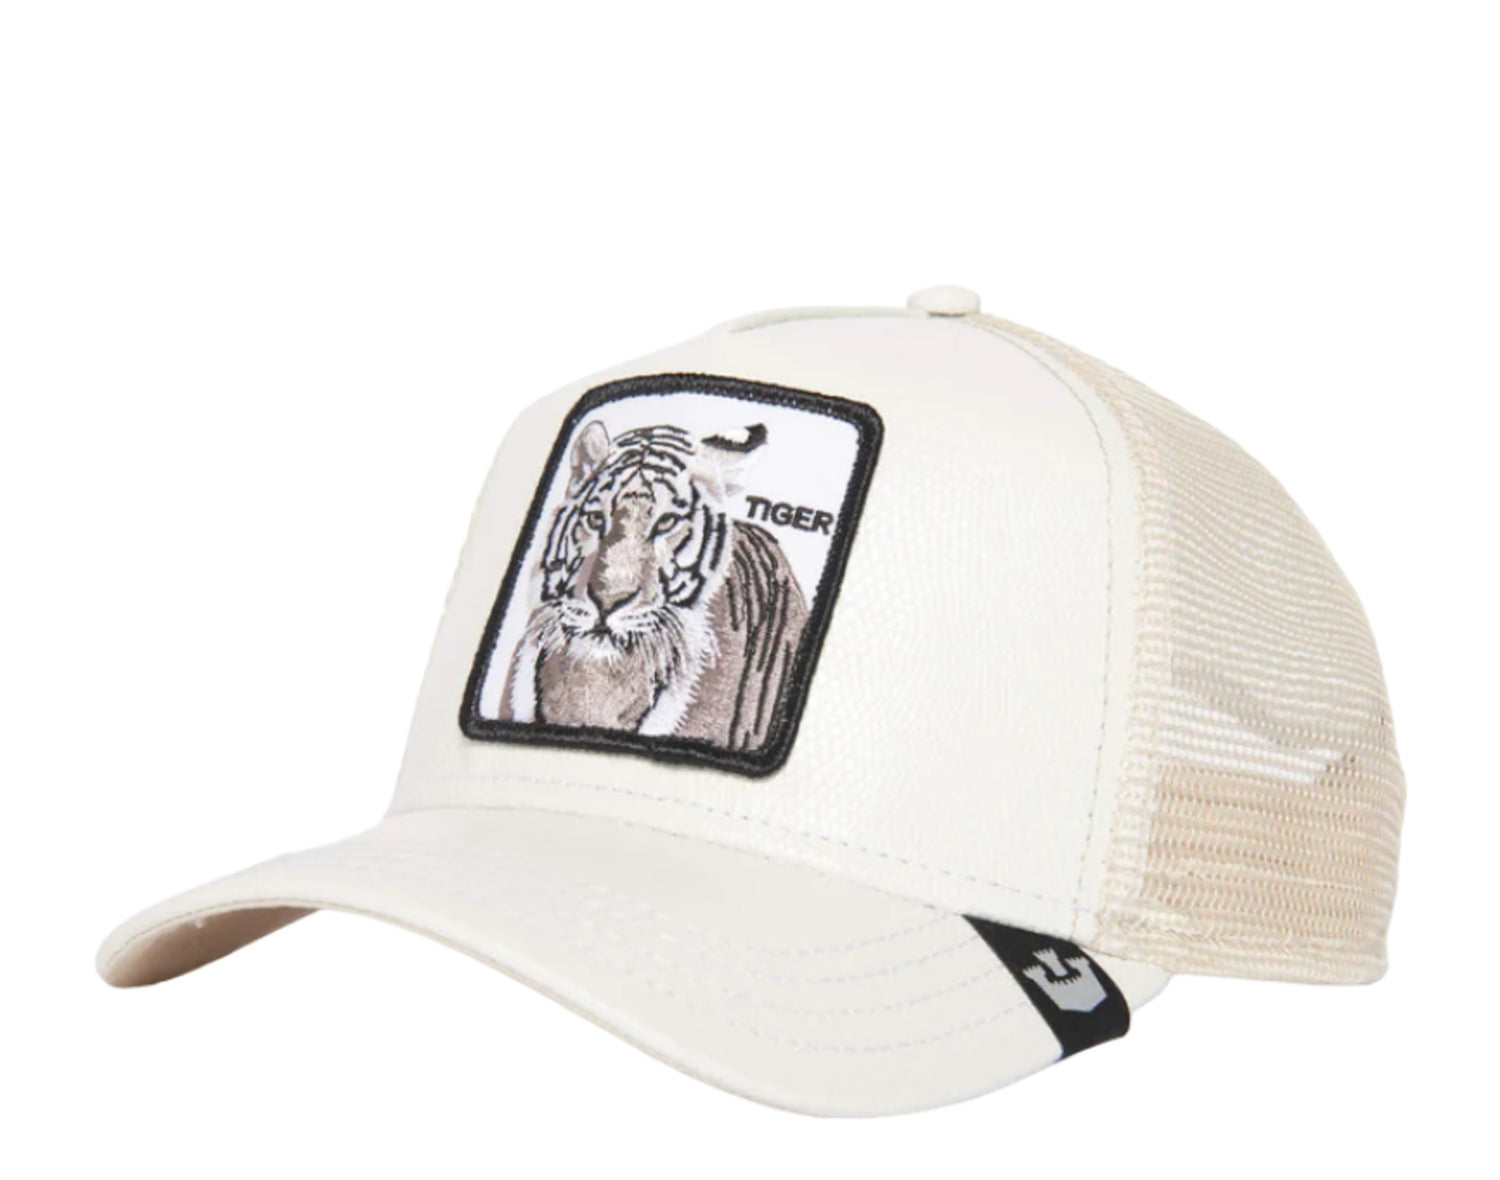 Goorin Bros The Killer Tiger Trucker Hat